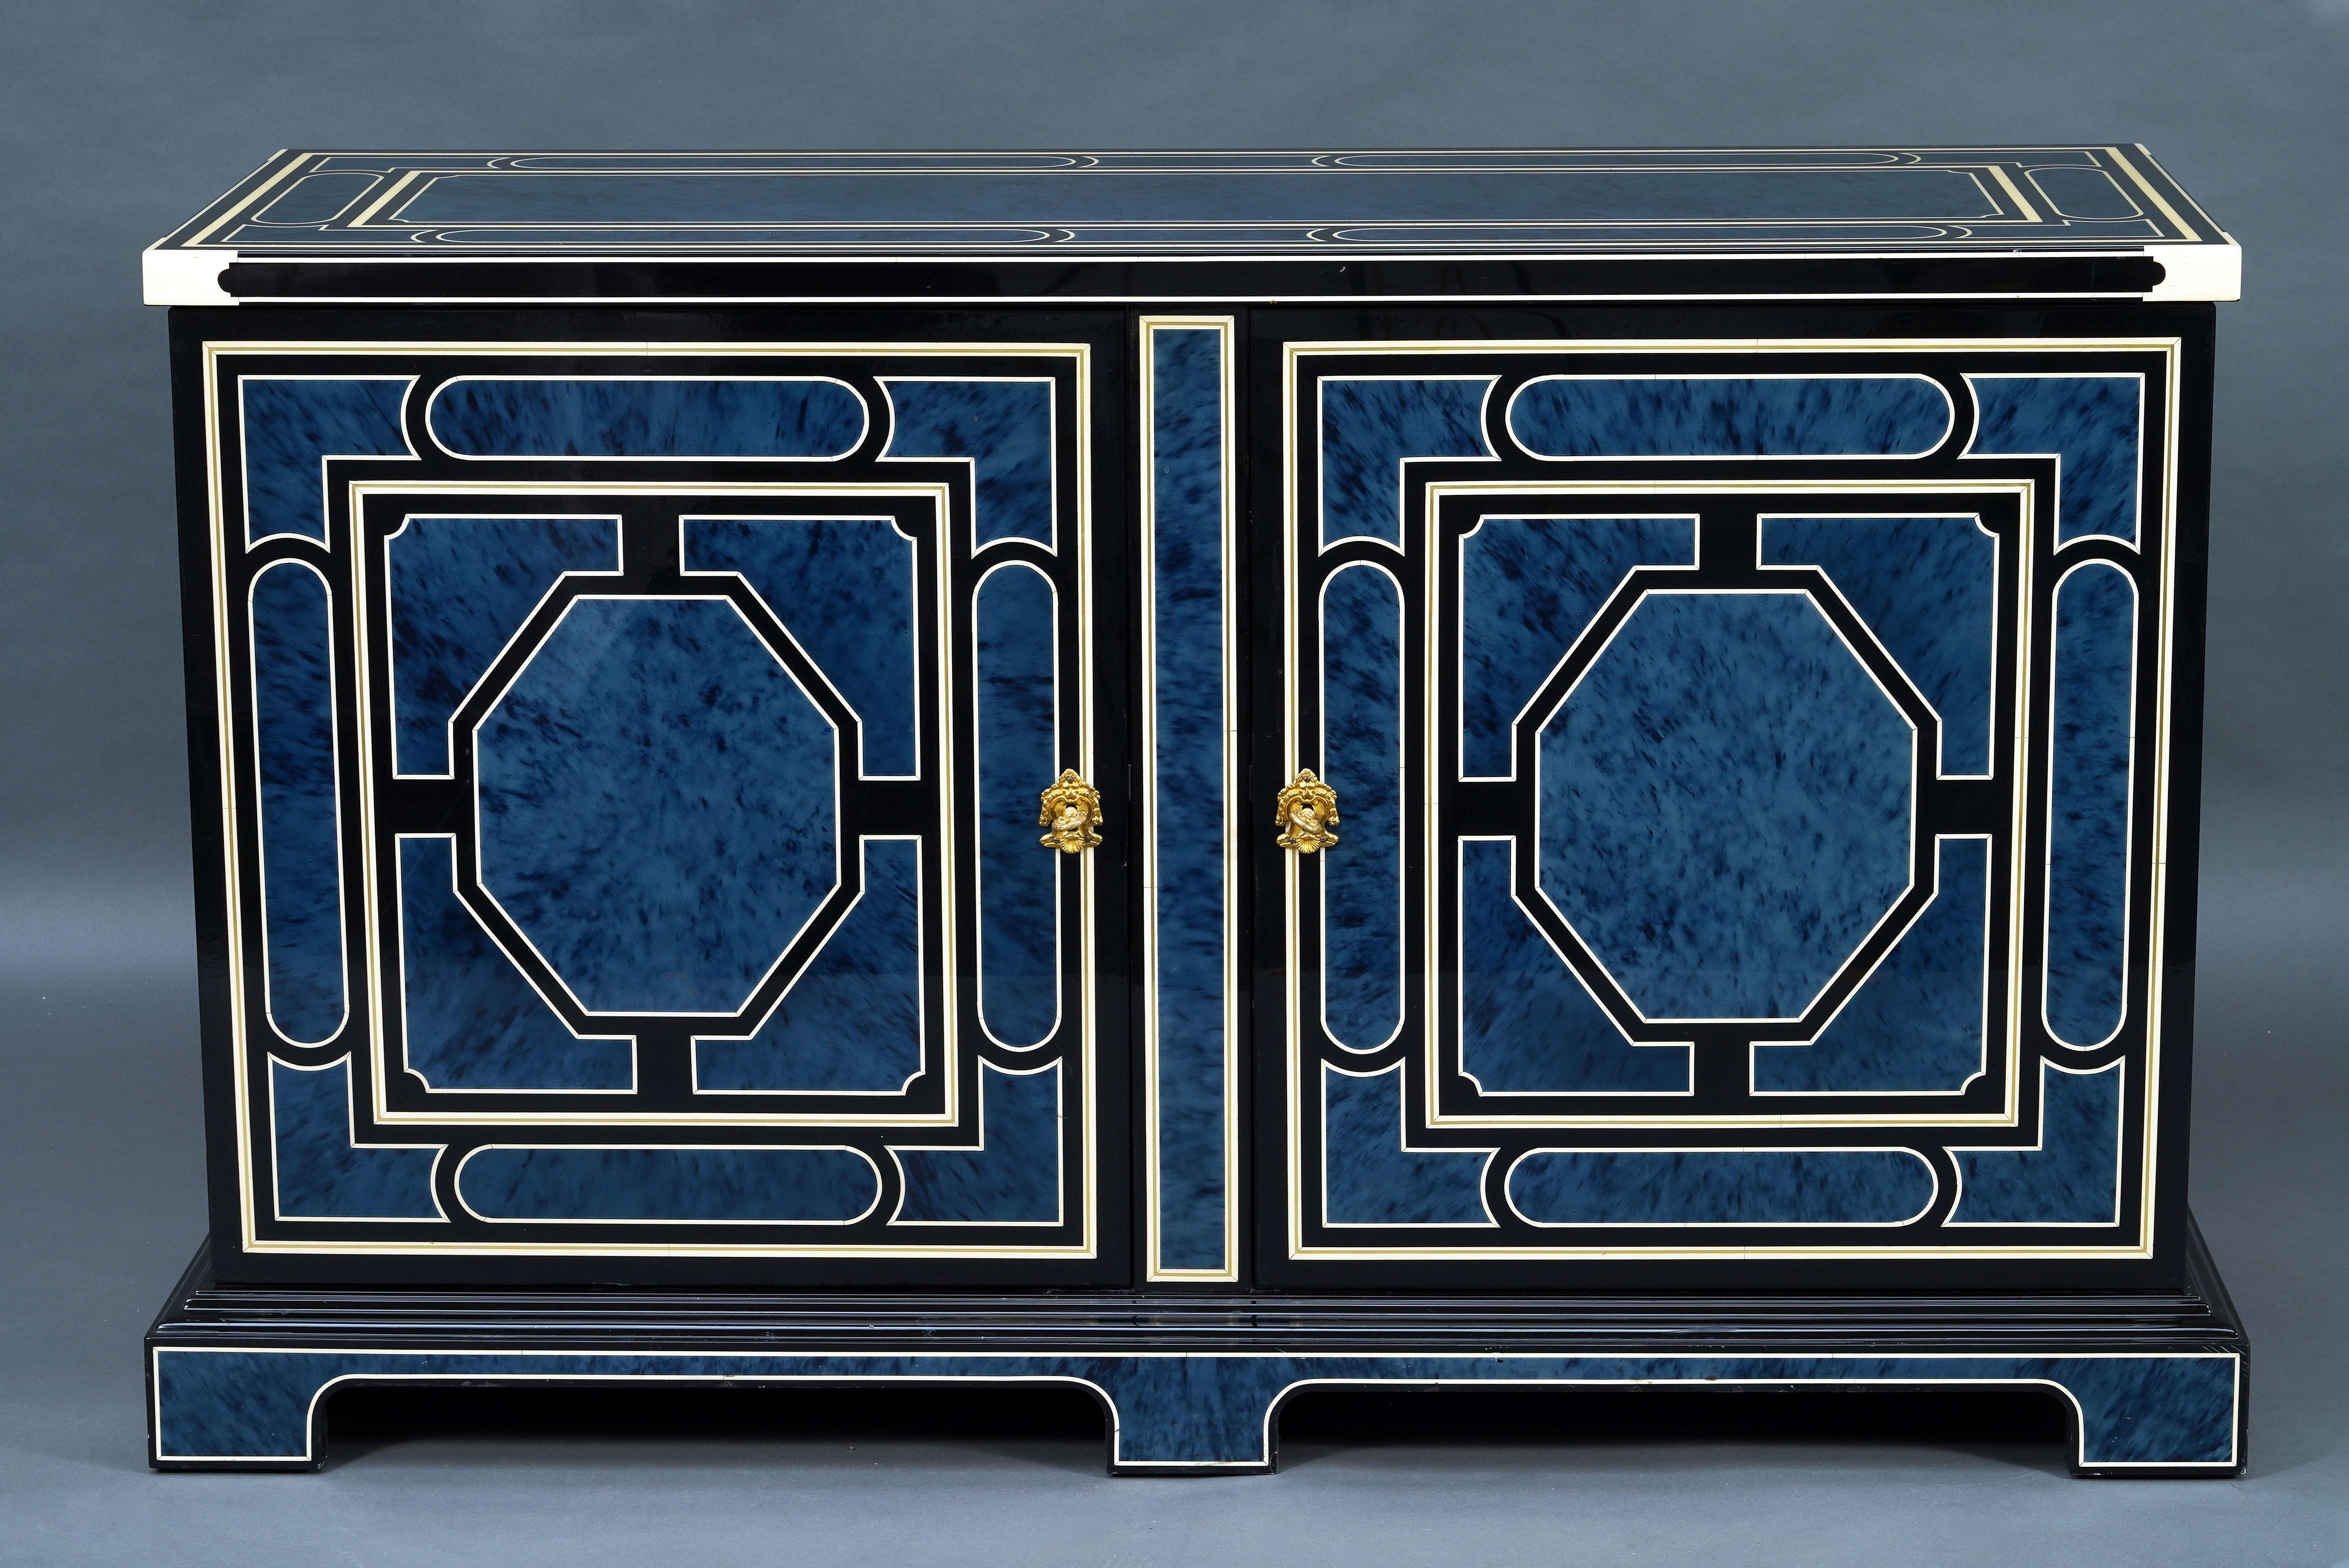 Beau buffet en bois laqué à décor bleu lapis simulant l'écaille dans des cadres géométriques composés d'un double filet, l'un imitant l'ivoire et l'autre le laiton, le tout sur fond noir.
S'ouvrant en façade par deux portes révélant une étagère, il